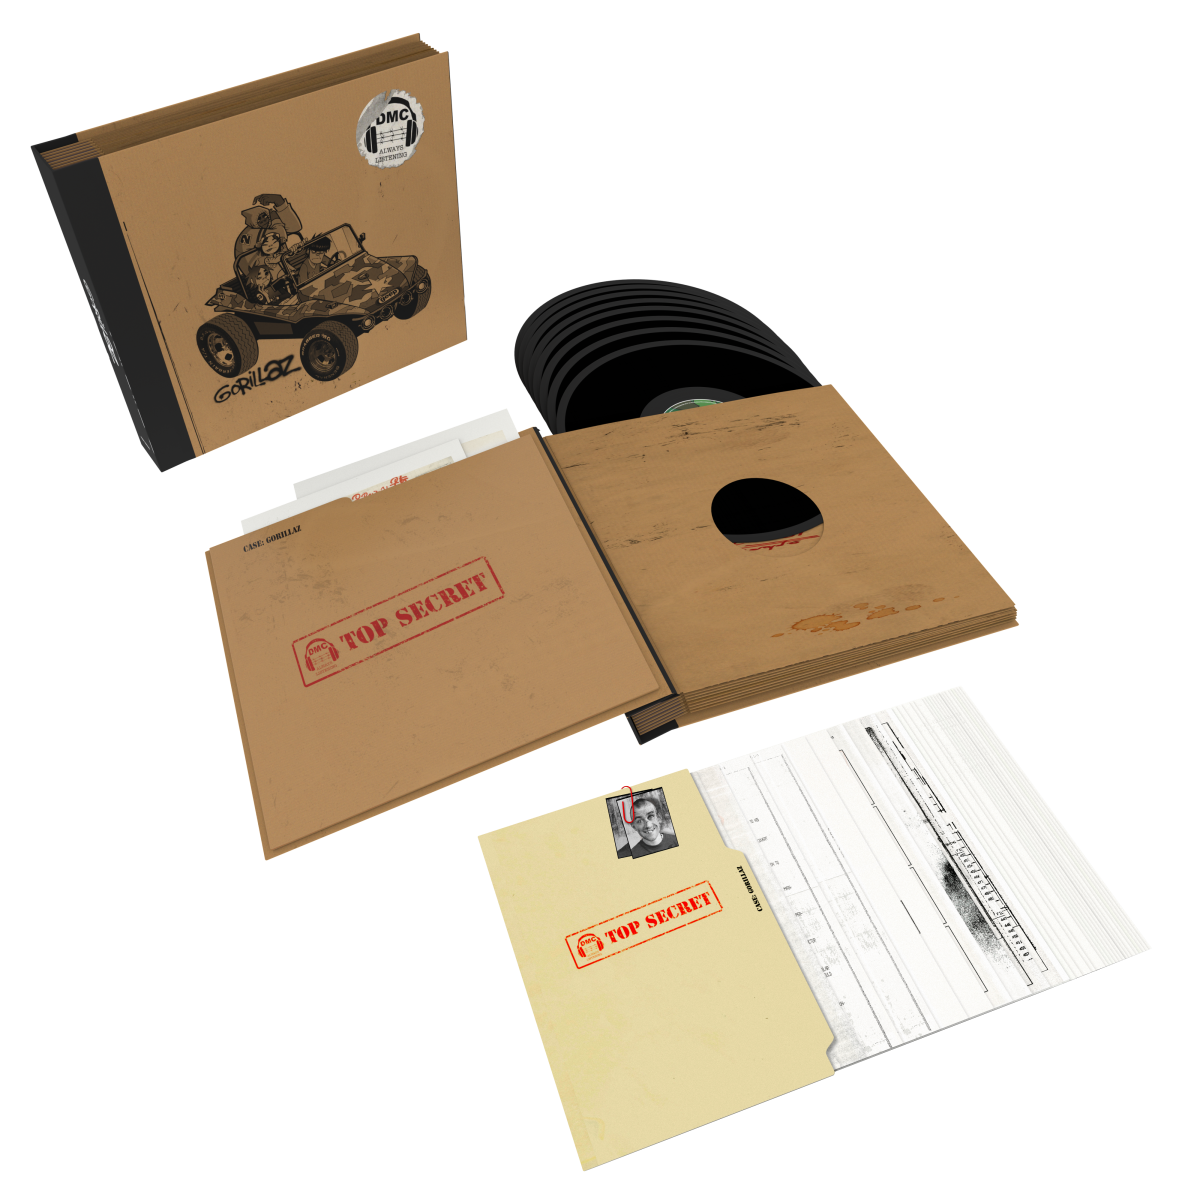 Gorillaz - 20TH ANNIVERSARY SUPER DELUXE VINYL BOXSET / 8xLP Vinyl | eBay